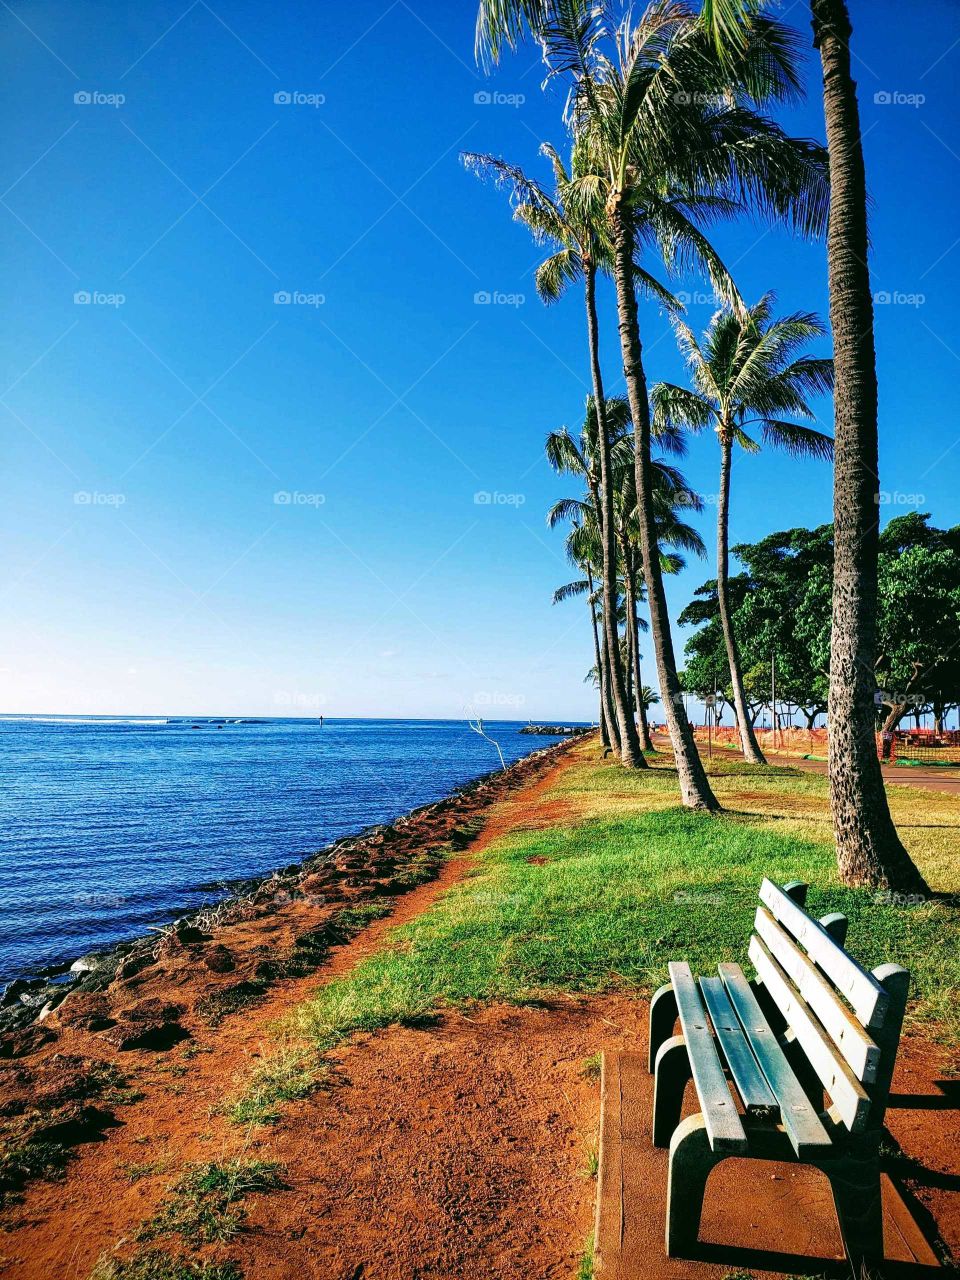 Hawaii Ala Moana Beach Park